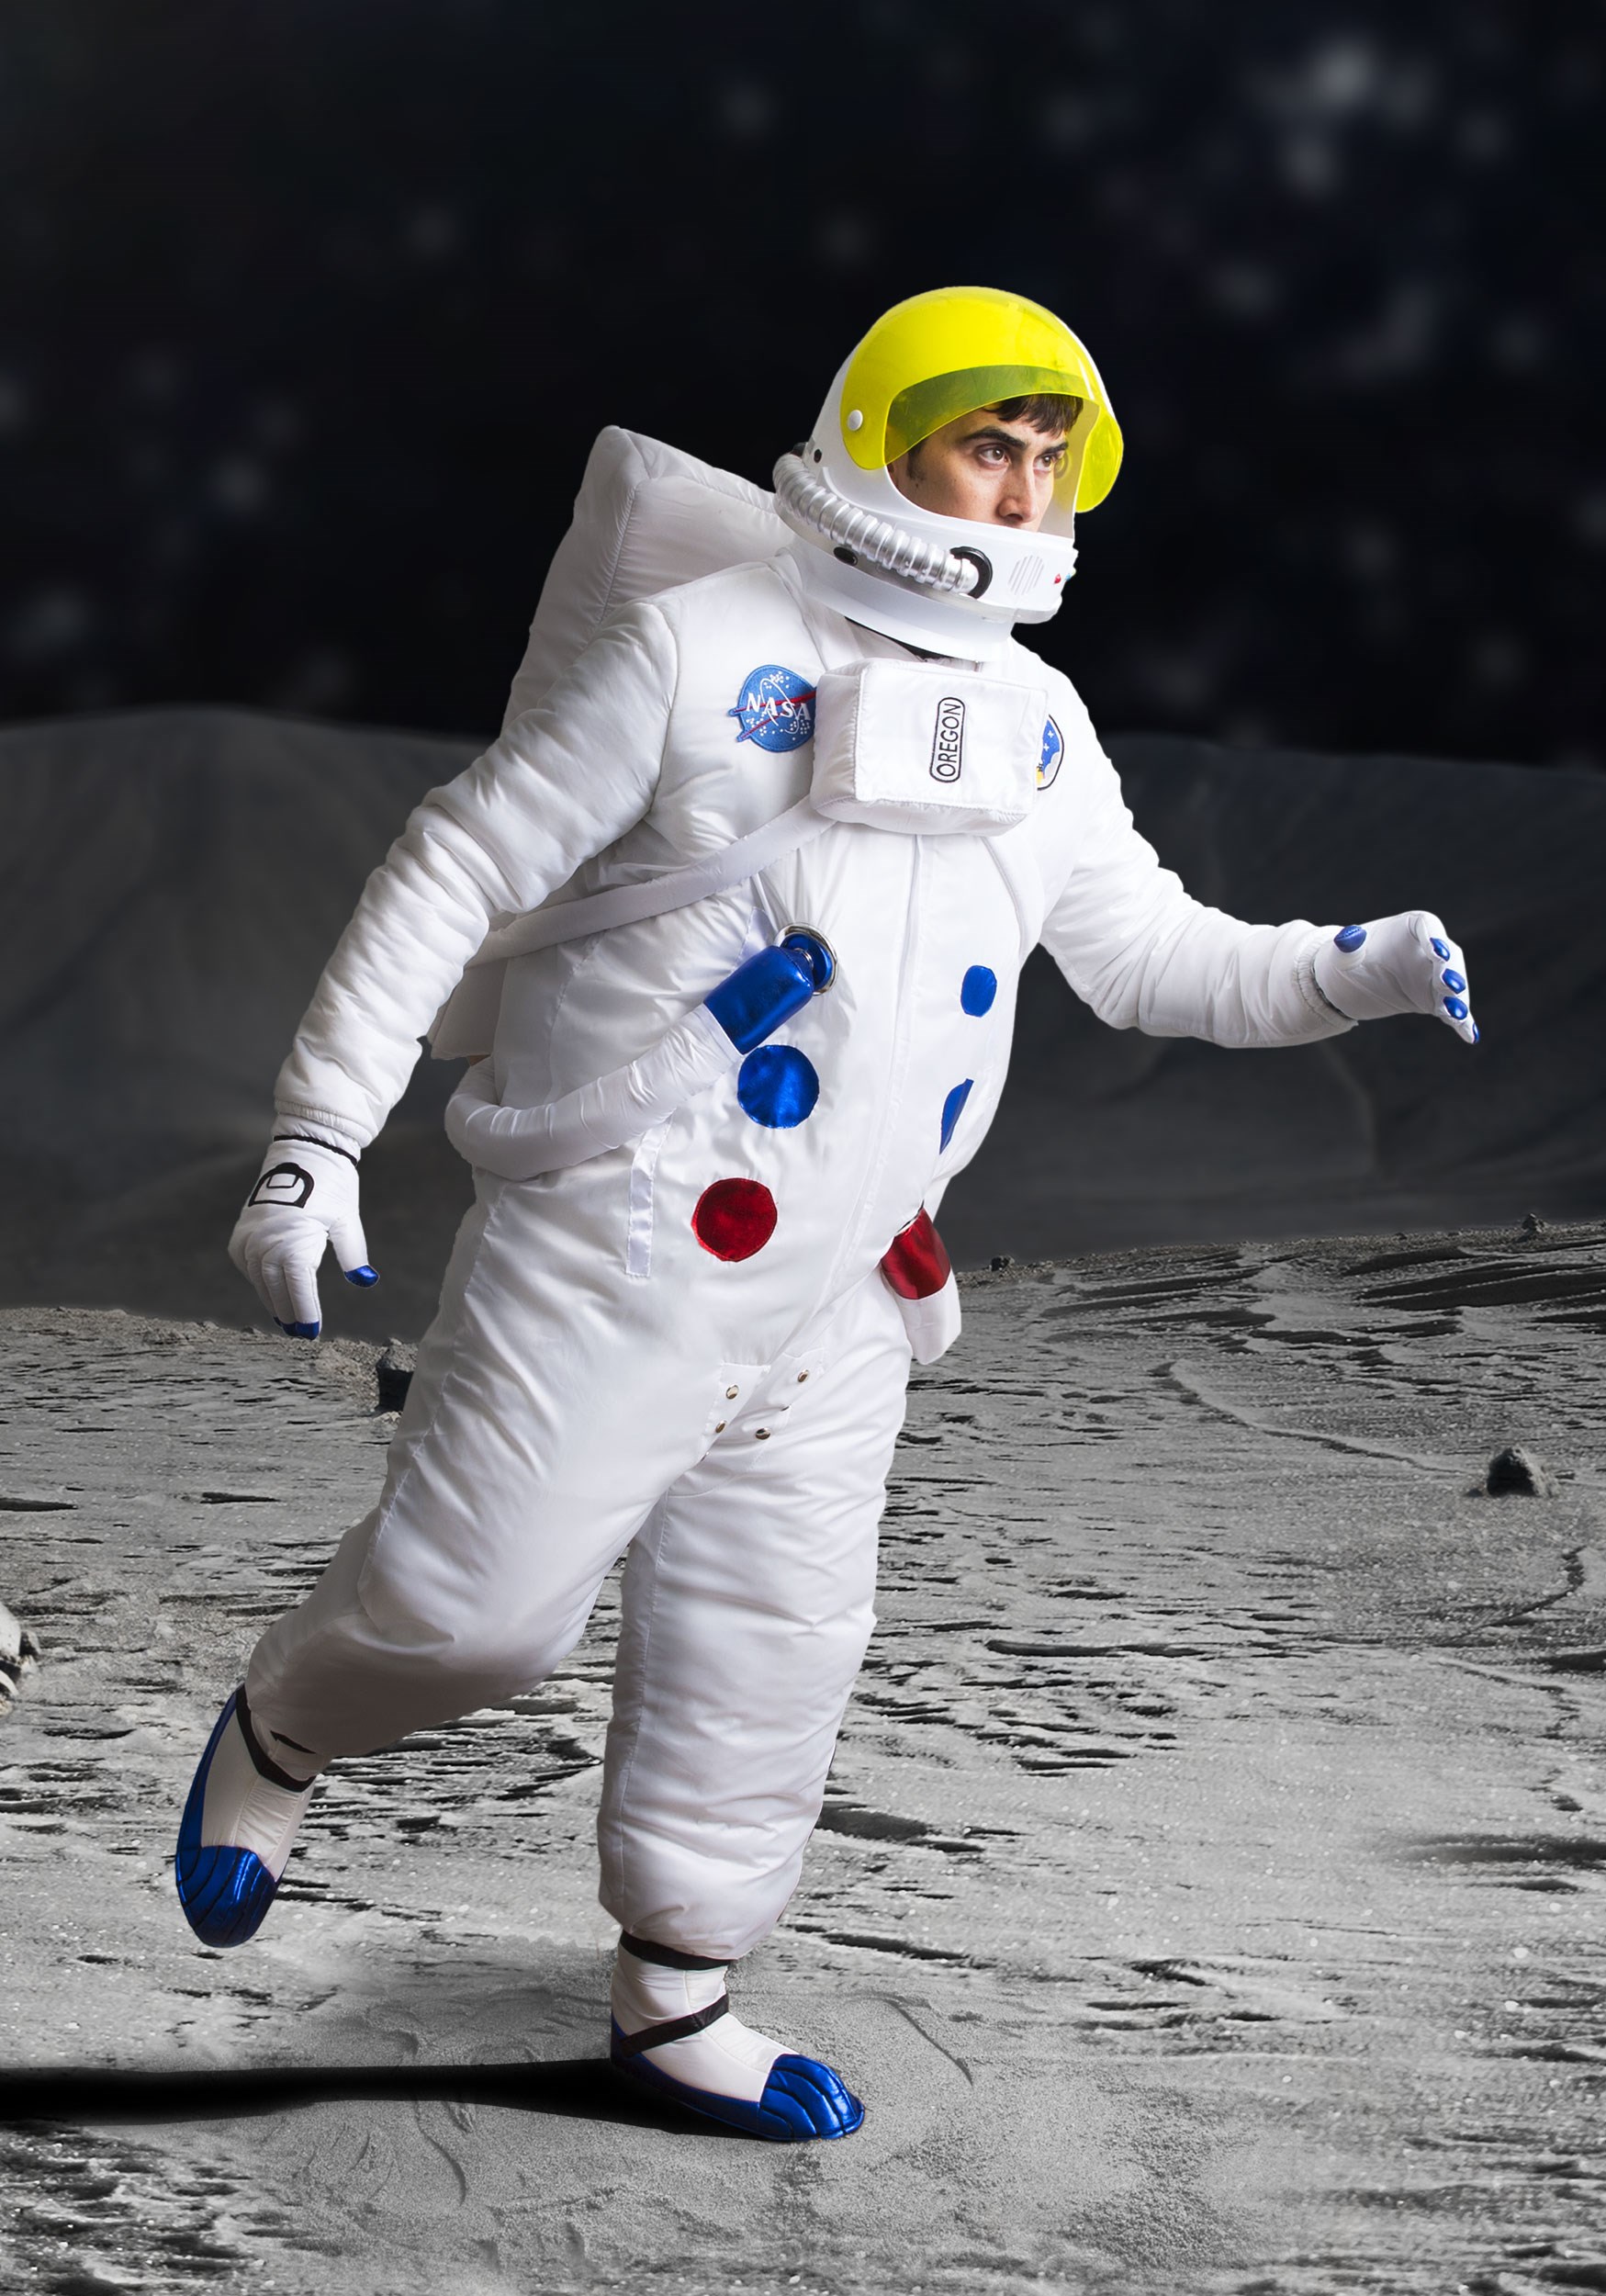 Casco de disfraces de astronauta del adulto Multicolor